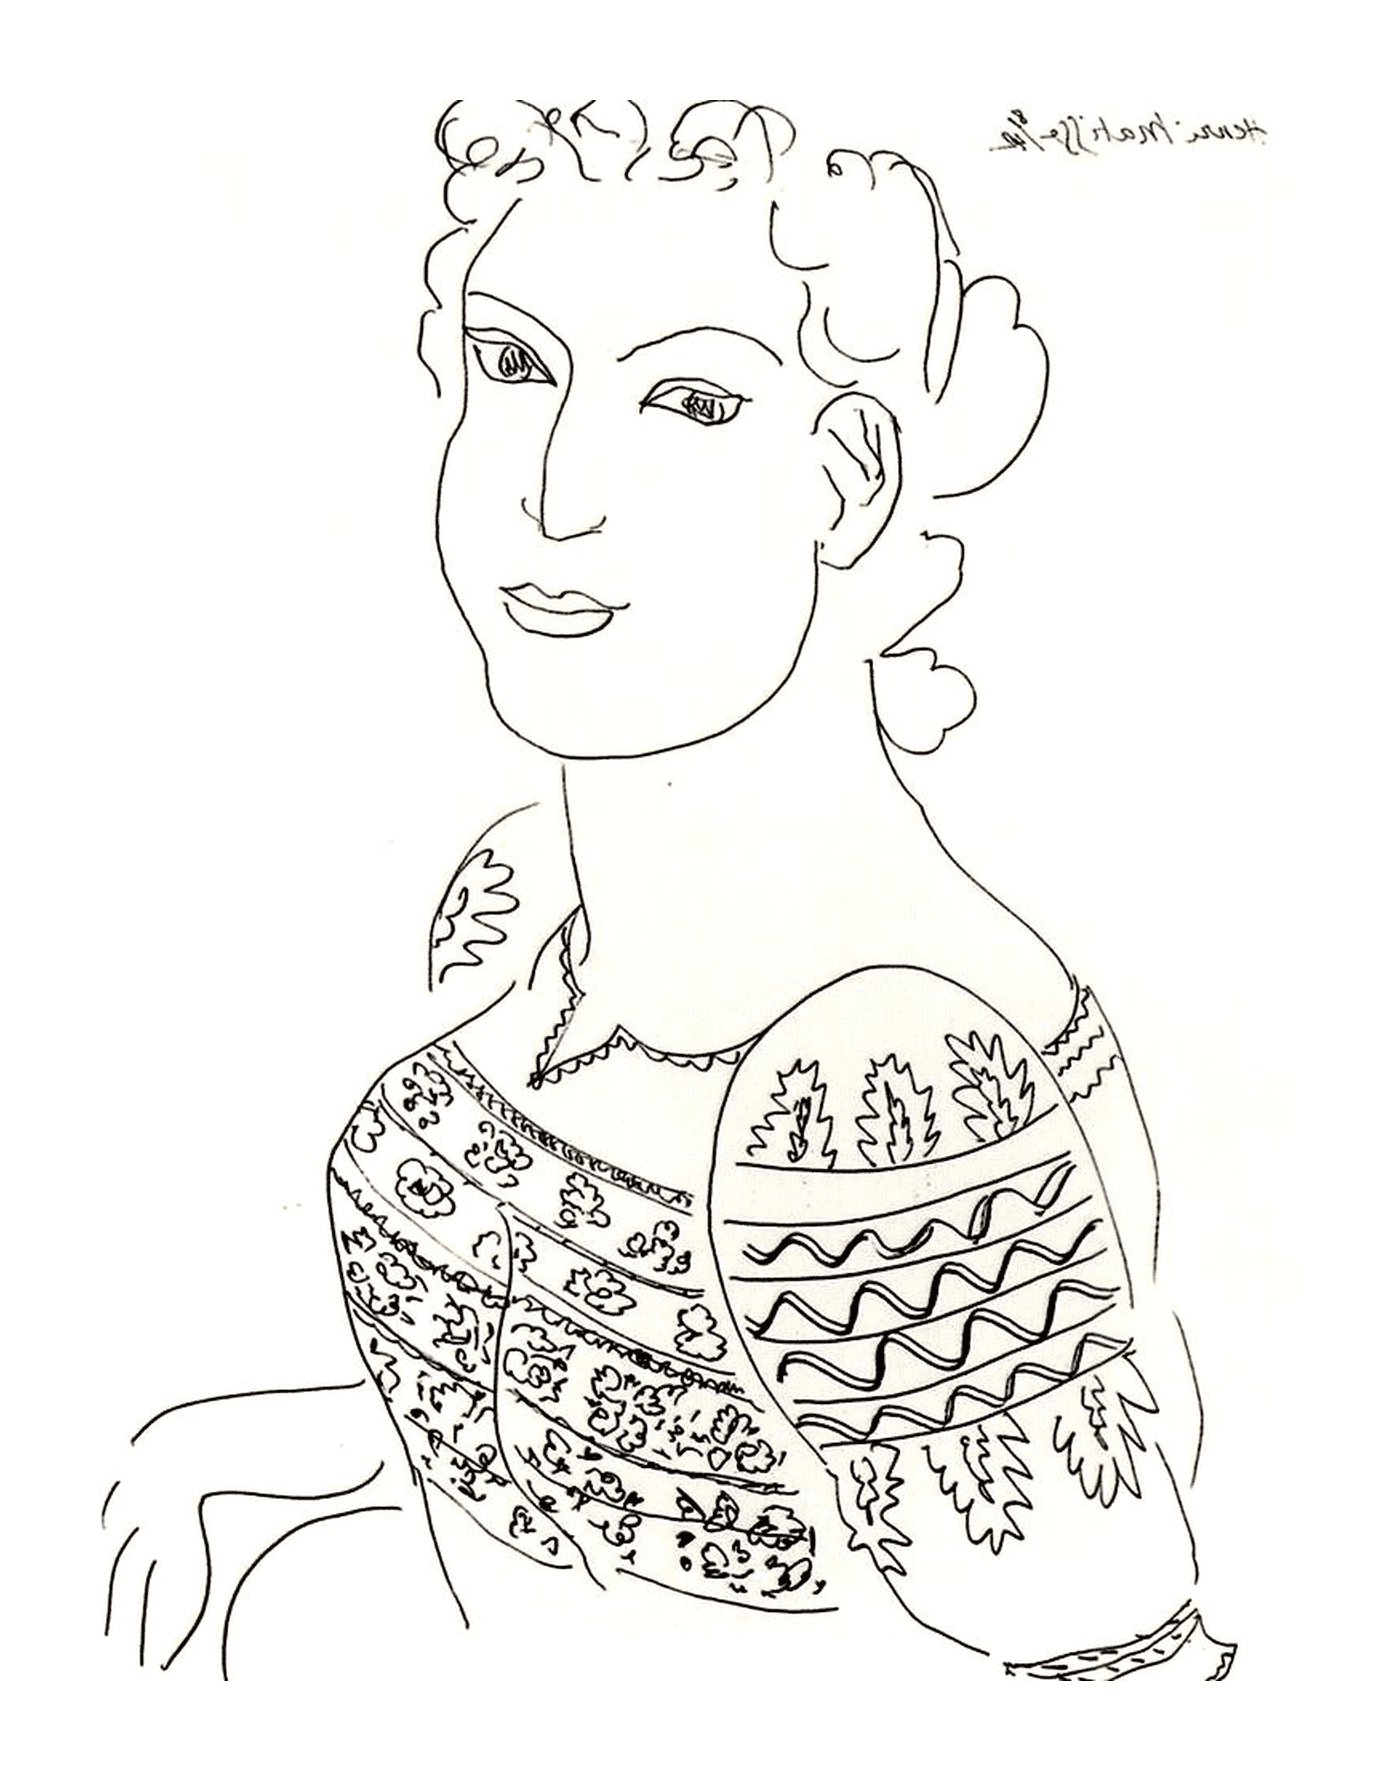   une femme portant un pull selon une blouse roumaine difficile à identifier, probablement une œuvre de Matisse 